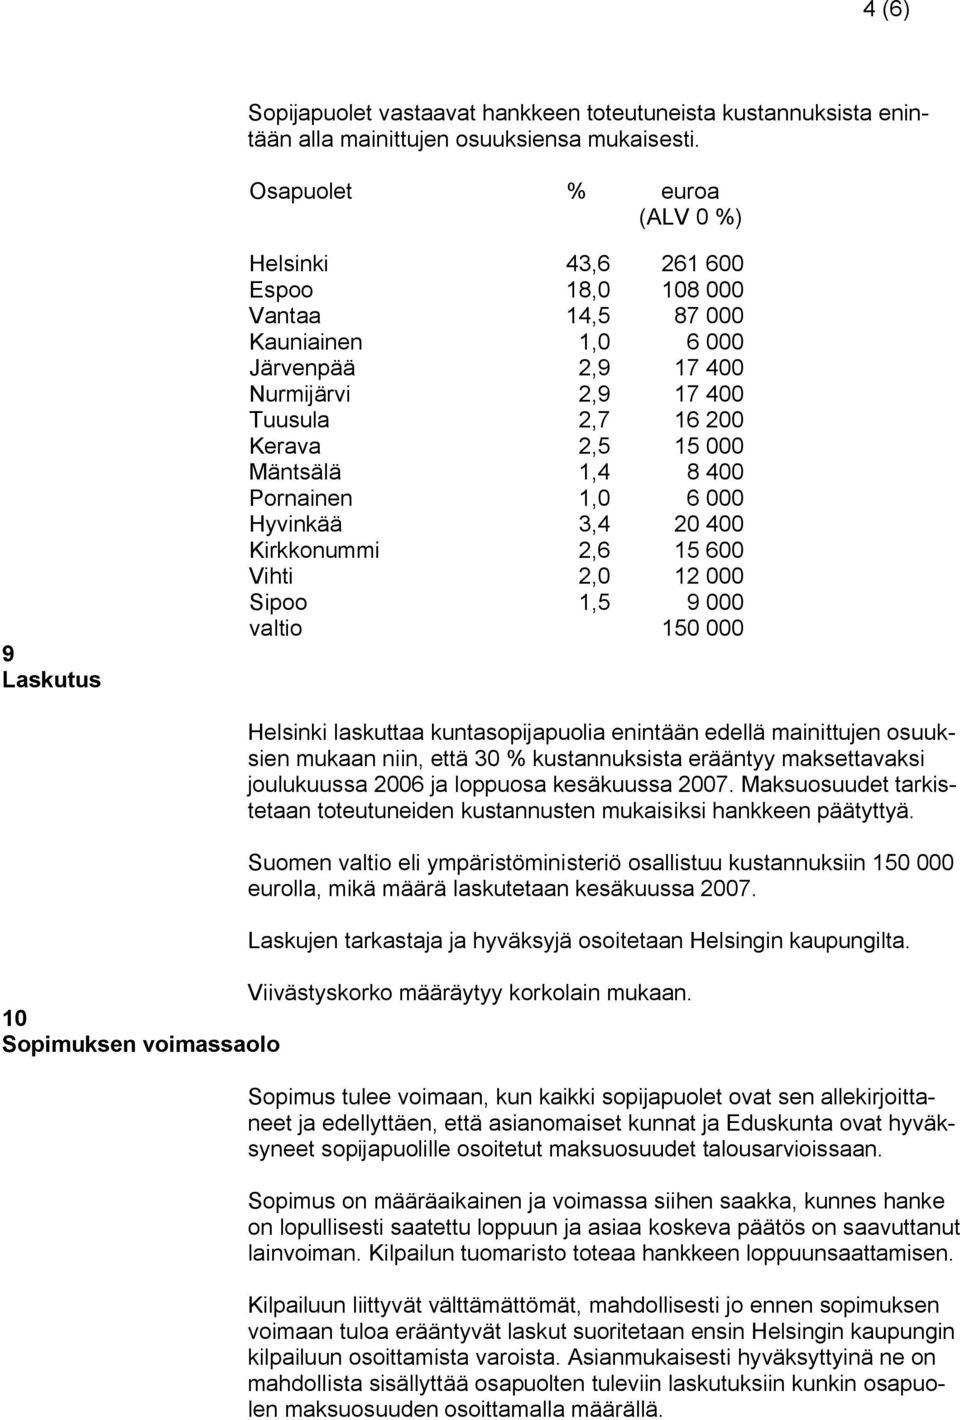 Mäntsälä 1,4 8 400 Pornainen 1,0 6 000 Hyvinkää 3,4 20 400 Kirkkonummi 2,6 15 600 Vihti 2,0 12 000 Sipoo 1,5 9 000 valtio 150 000 Helsinki laskuttaa kuntasopijapuolia enintään edellä mainittujen